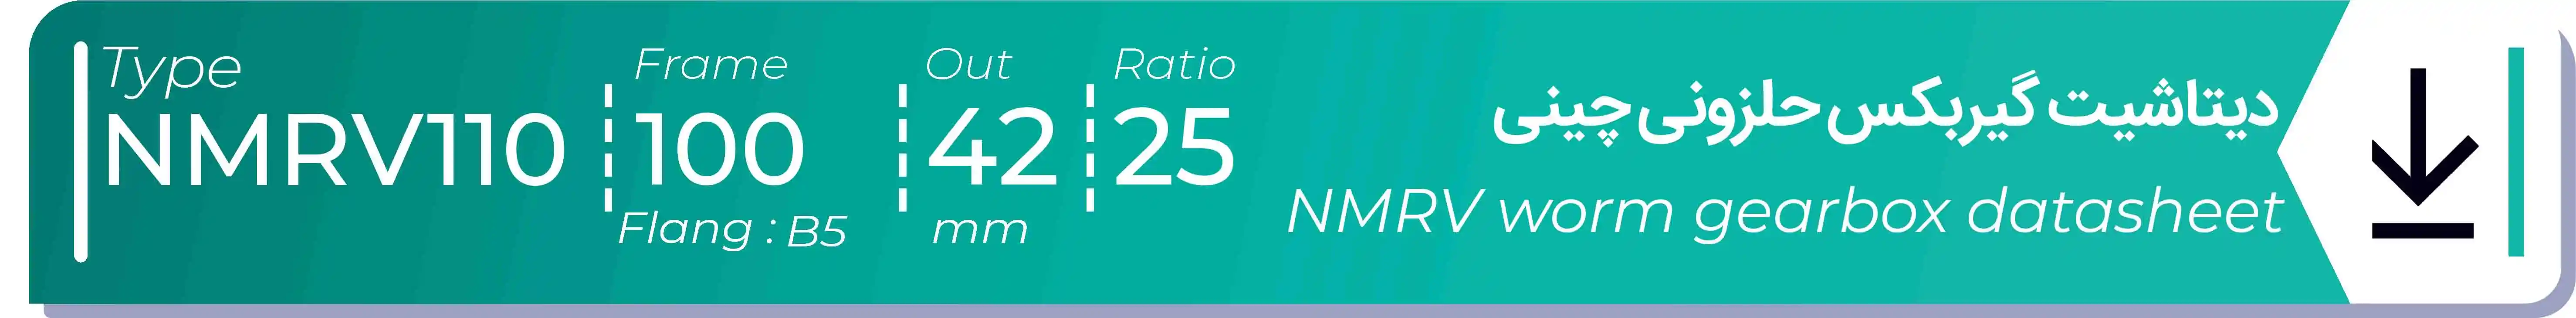  دیتاشیت و مشخصات فنی گیربکس حلزونی چینی   NMRV110  -  با خروجی 42- میلی متر و نسبت25 و فریم 100